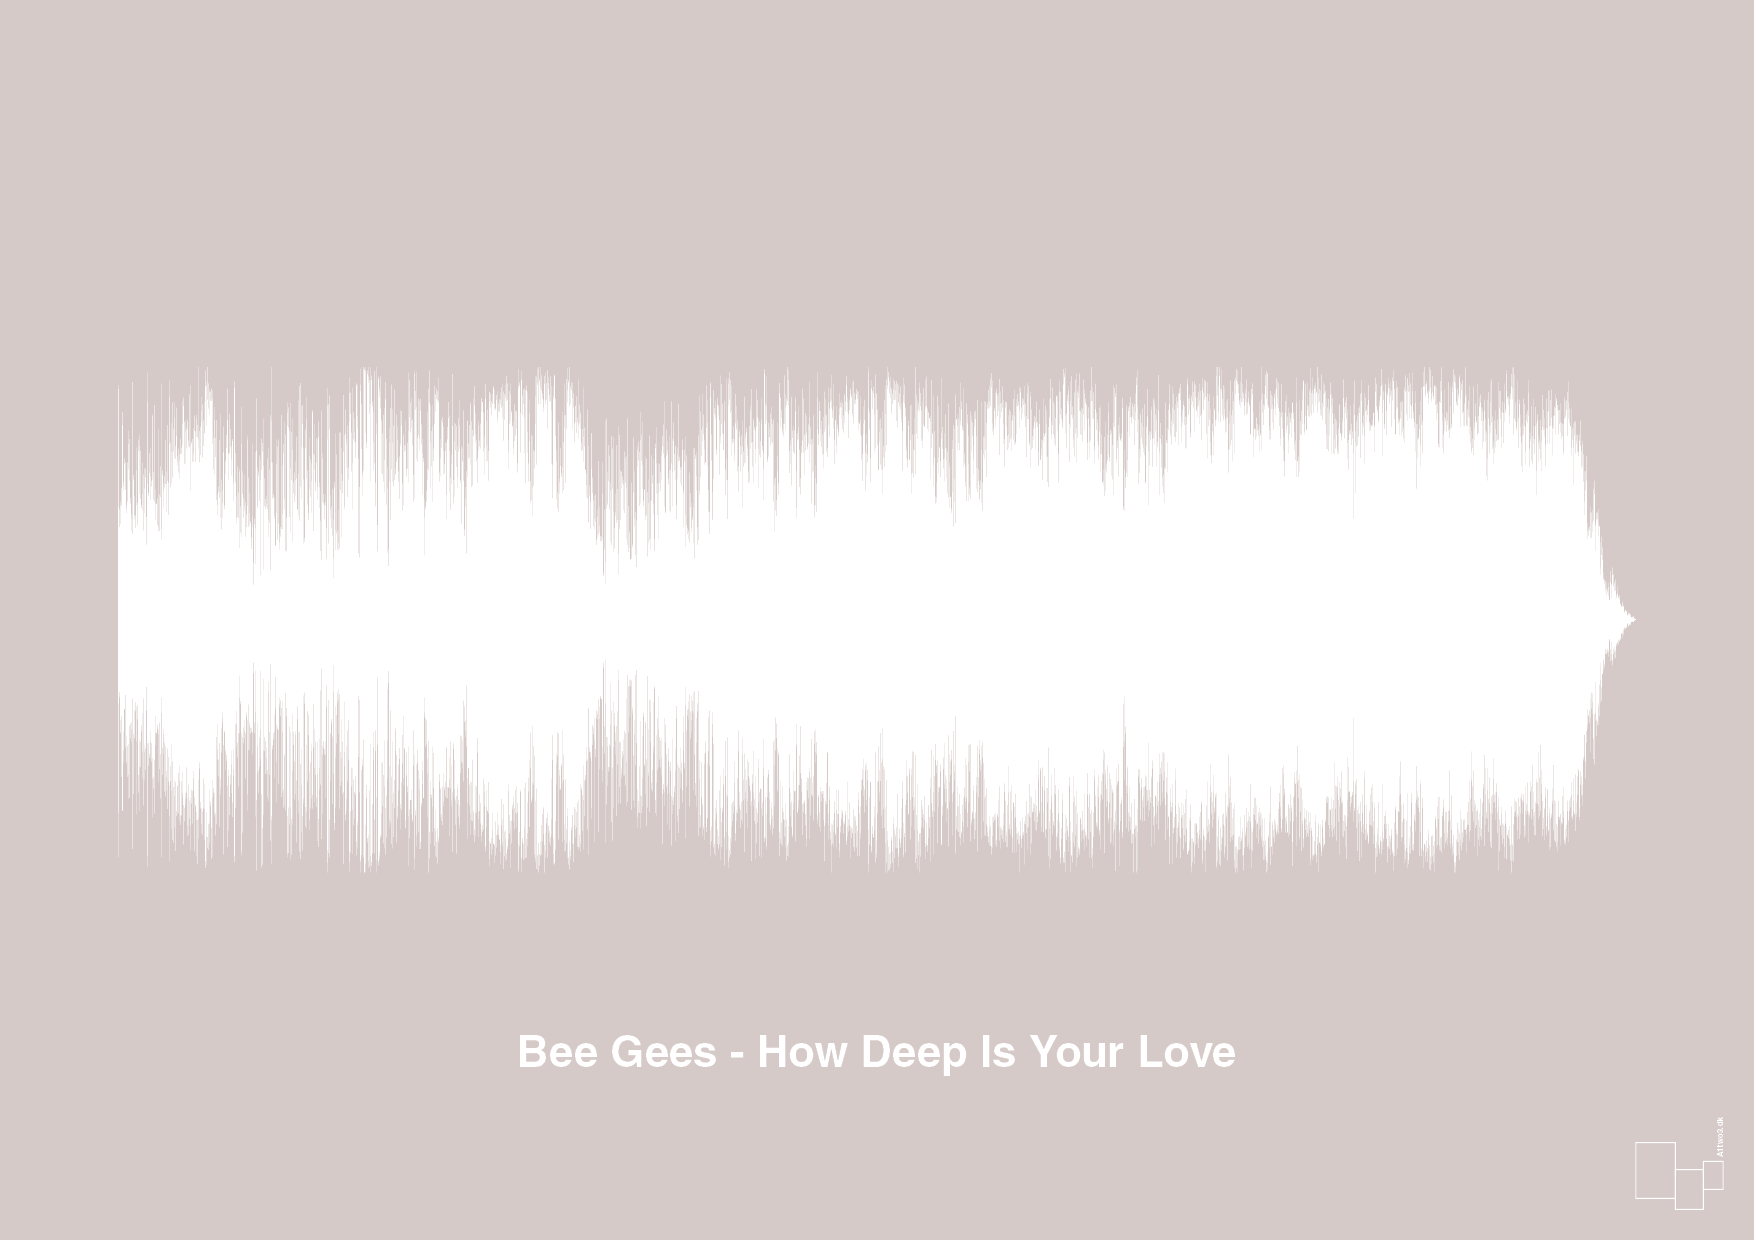 bee gees - how deep is your love - Plakat med Musik i Broken Beige